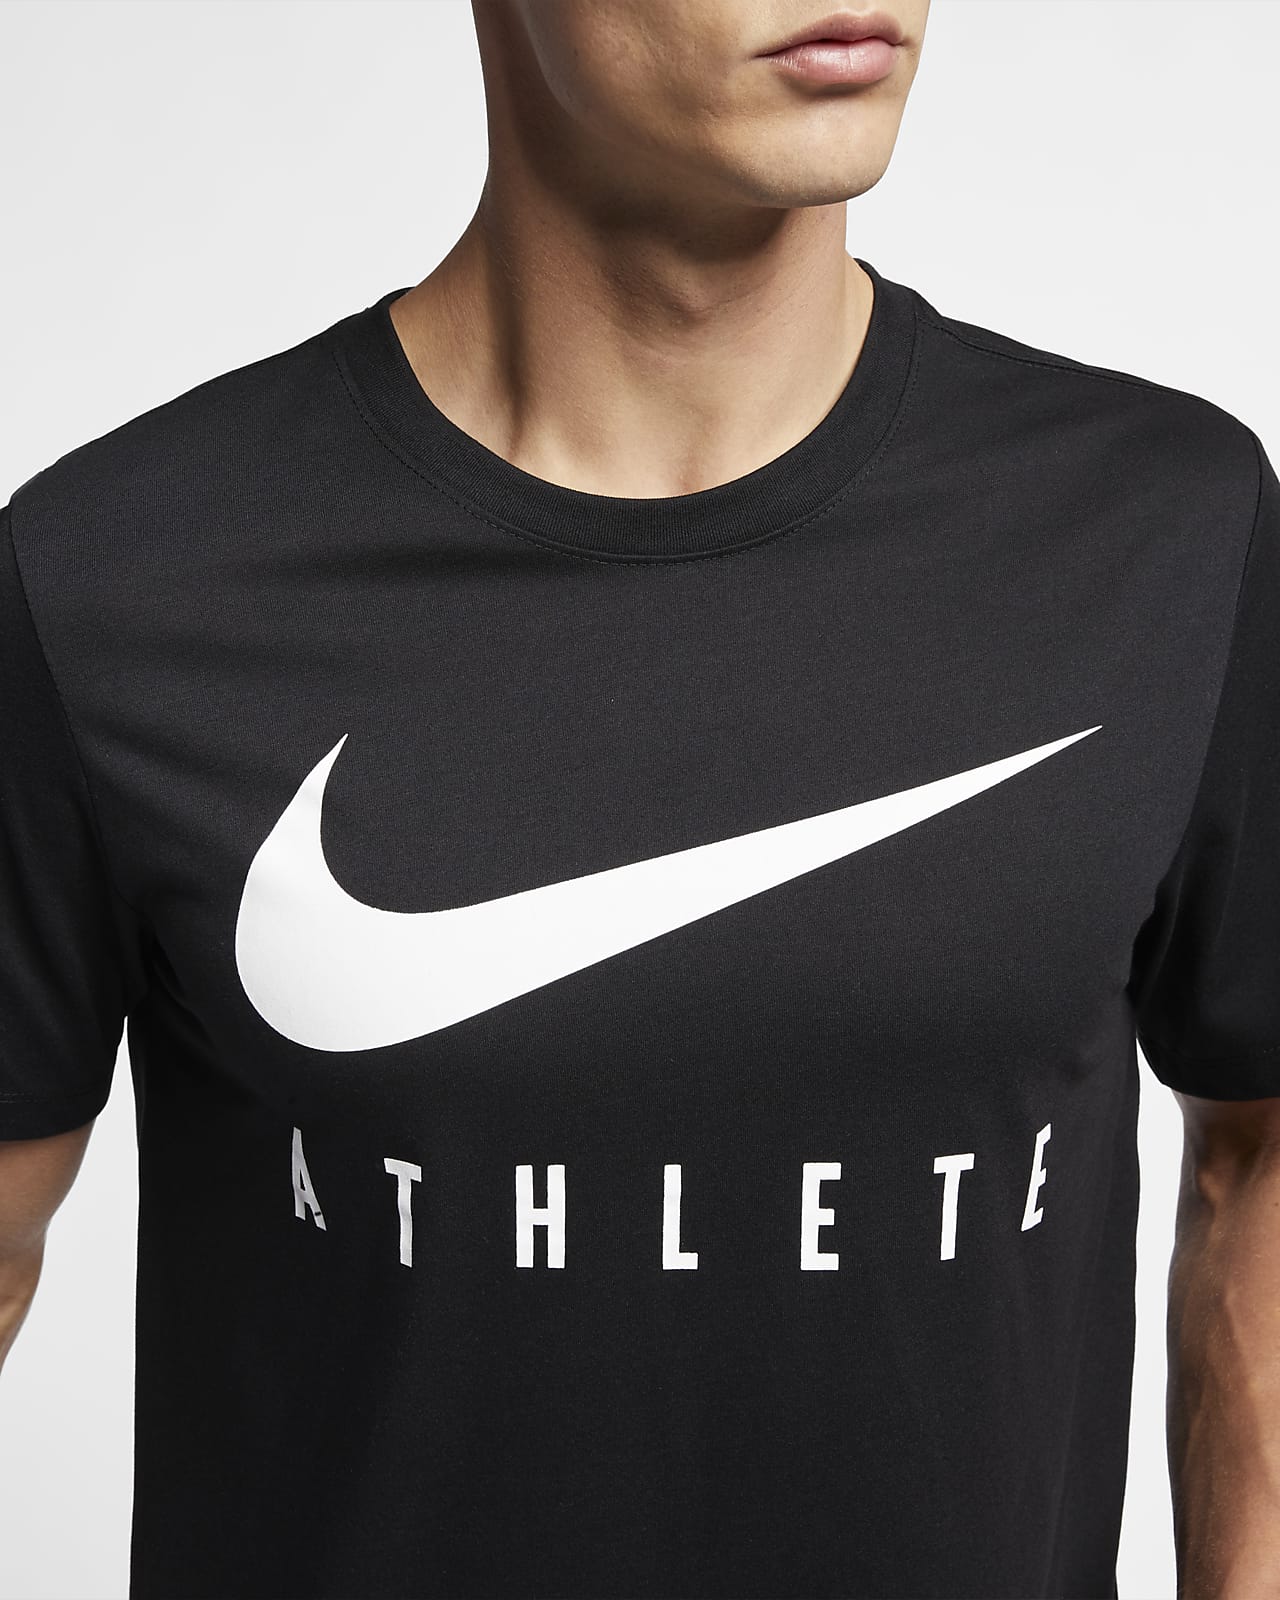 Футболки найк мужские купить. Майка Nike athlete мужская. Nike Dri Fit. Nike Dri-Fit athlete футболка. Футболка Nike Air Dri Fit.